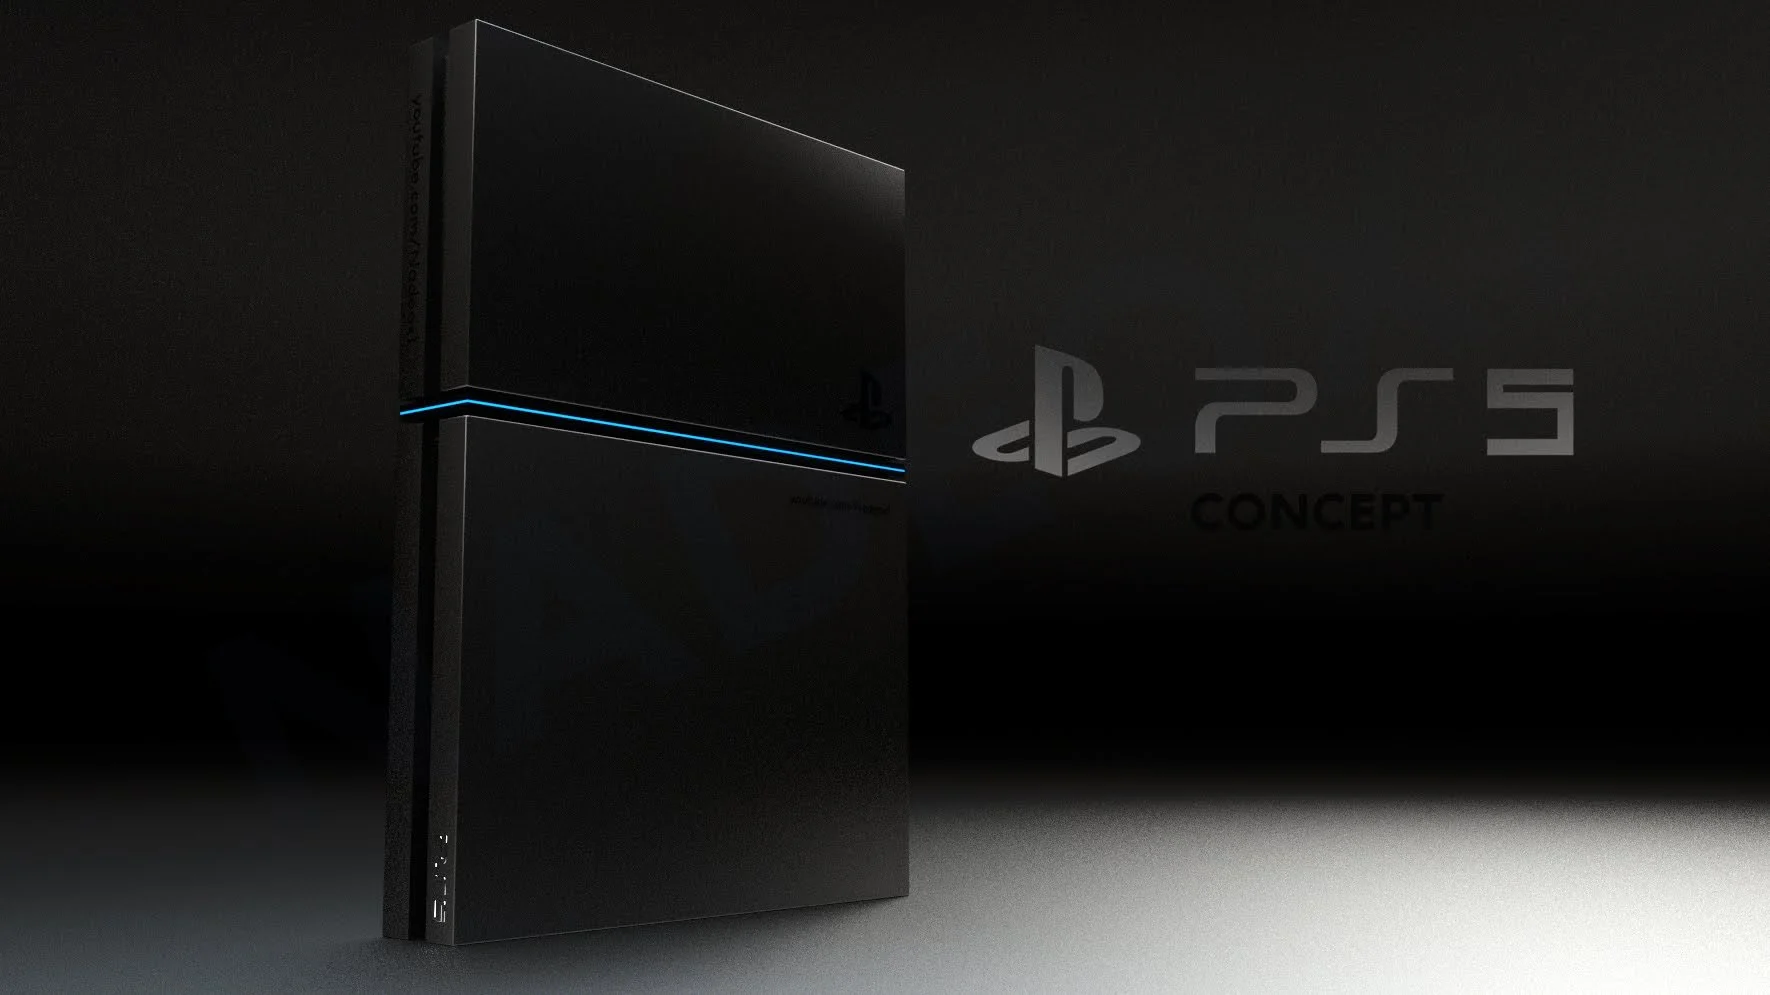 Время летит быстро: PlayStation 4, самой популярной консоли текущего поколения, в ноябре стукнет пять лет. Нет никаких сомнений в том, что Sony уже начала разработку полноценной наследницы PS4 — PlayStation 5. В сети стали появляться первые слухи о будущей приставке, а потому пора пофантазировать: чего мы хотим от нее хотим.